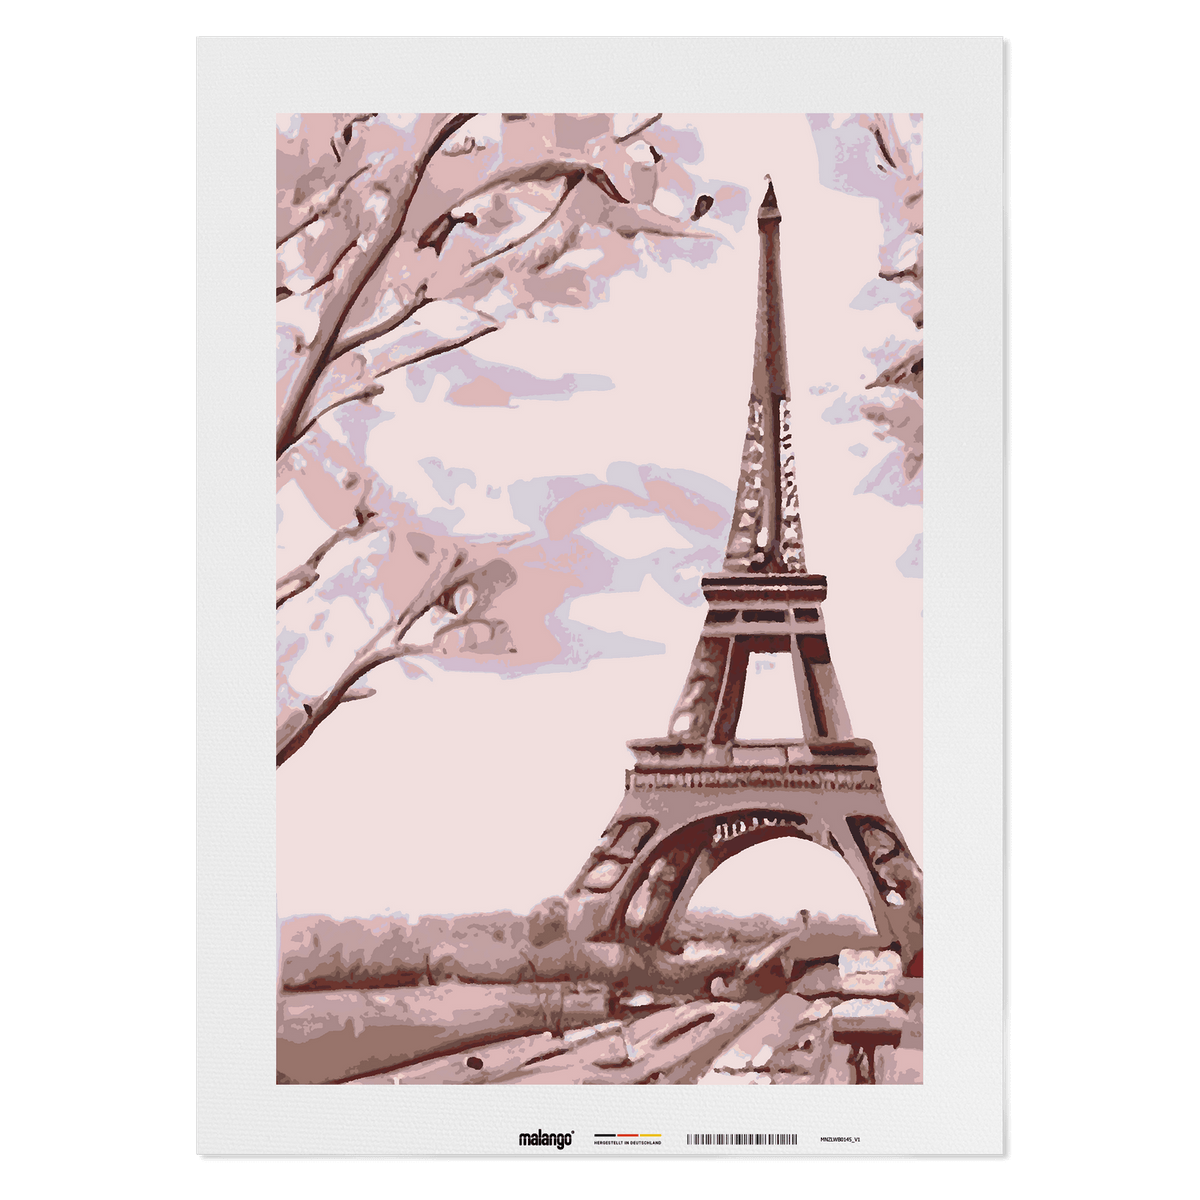 Malen nach Zahlen - Blick auf den Eiffelturm No. 2